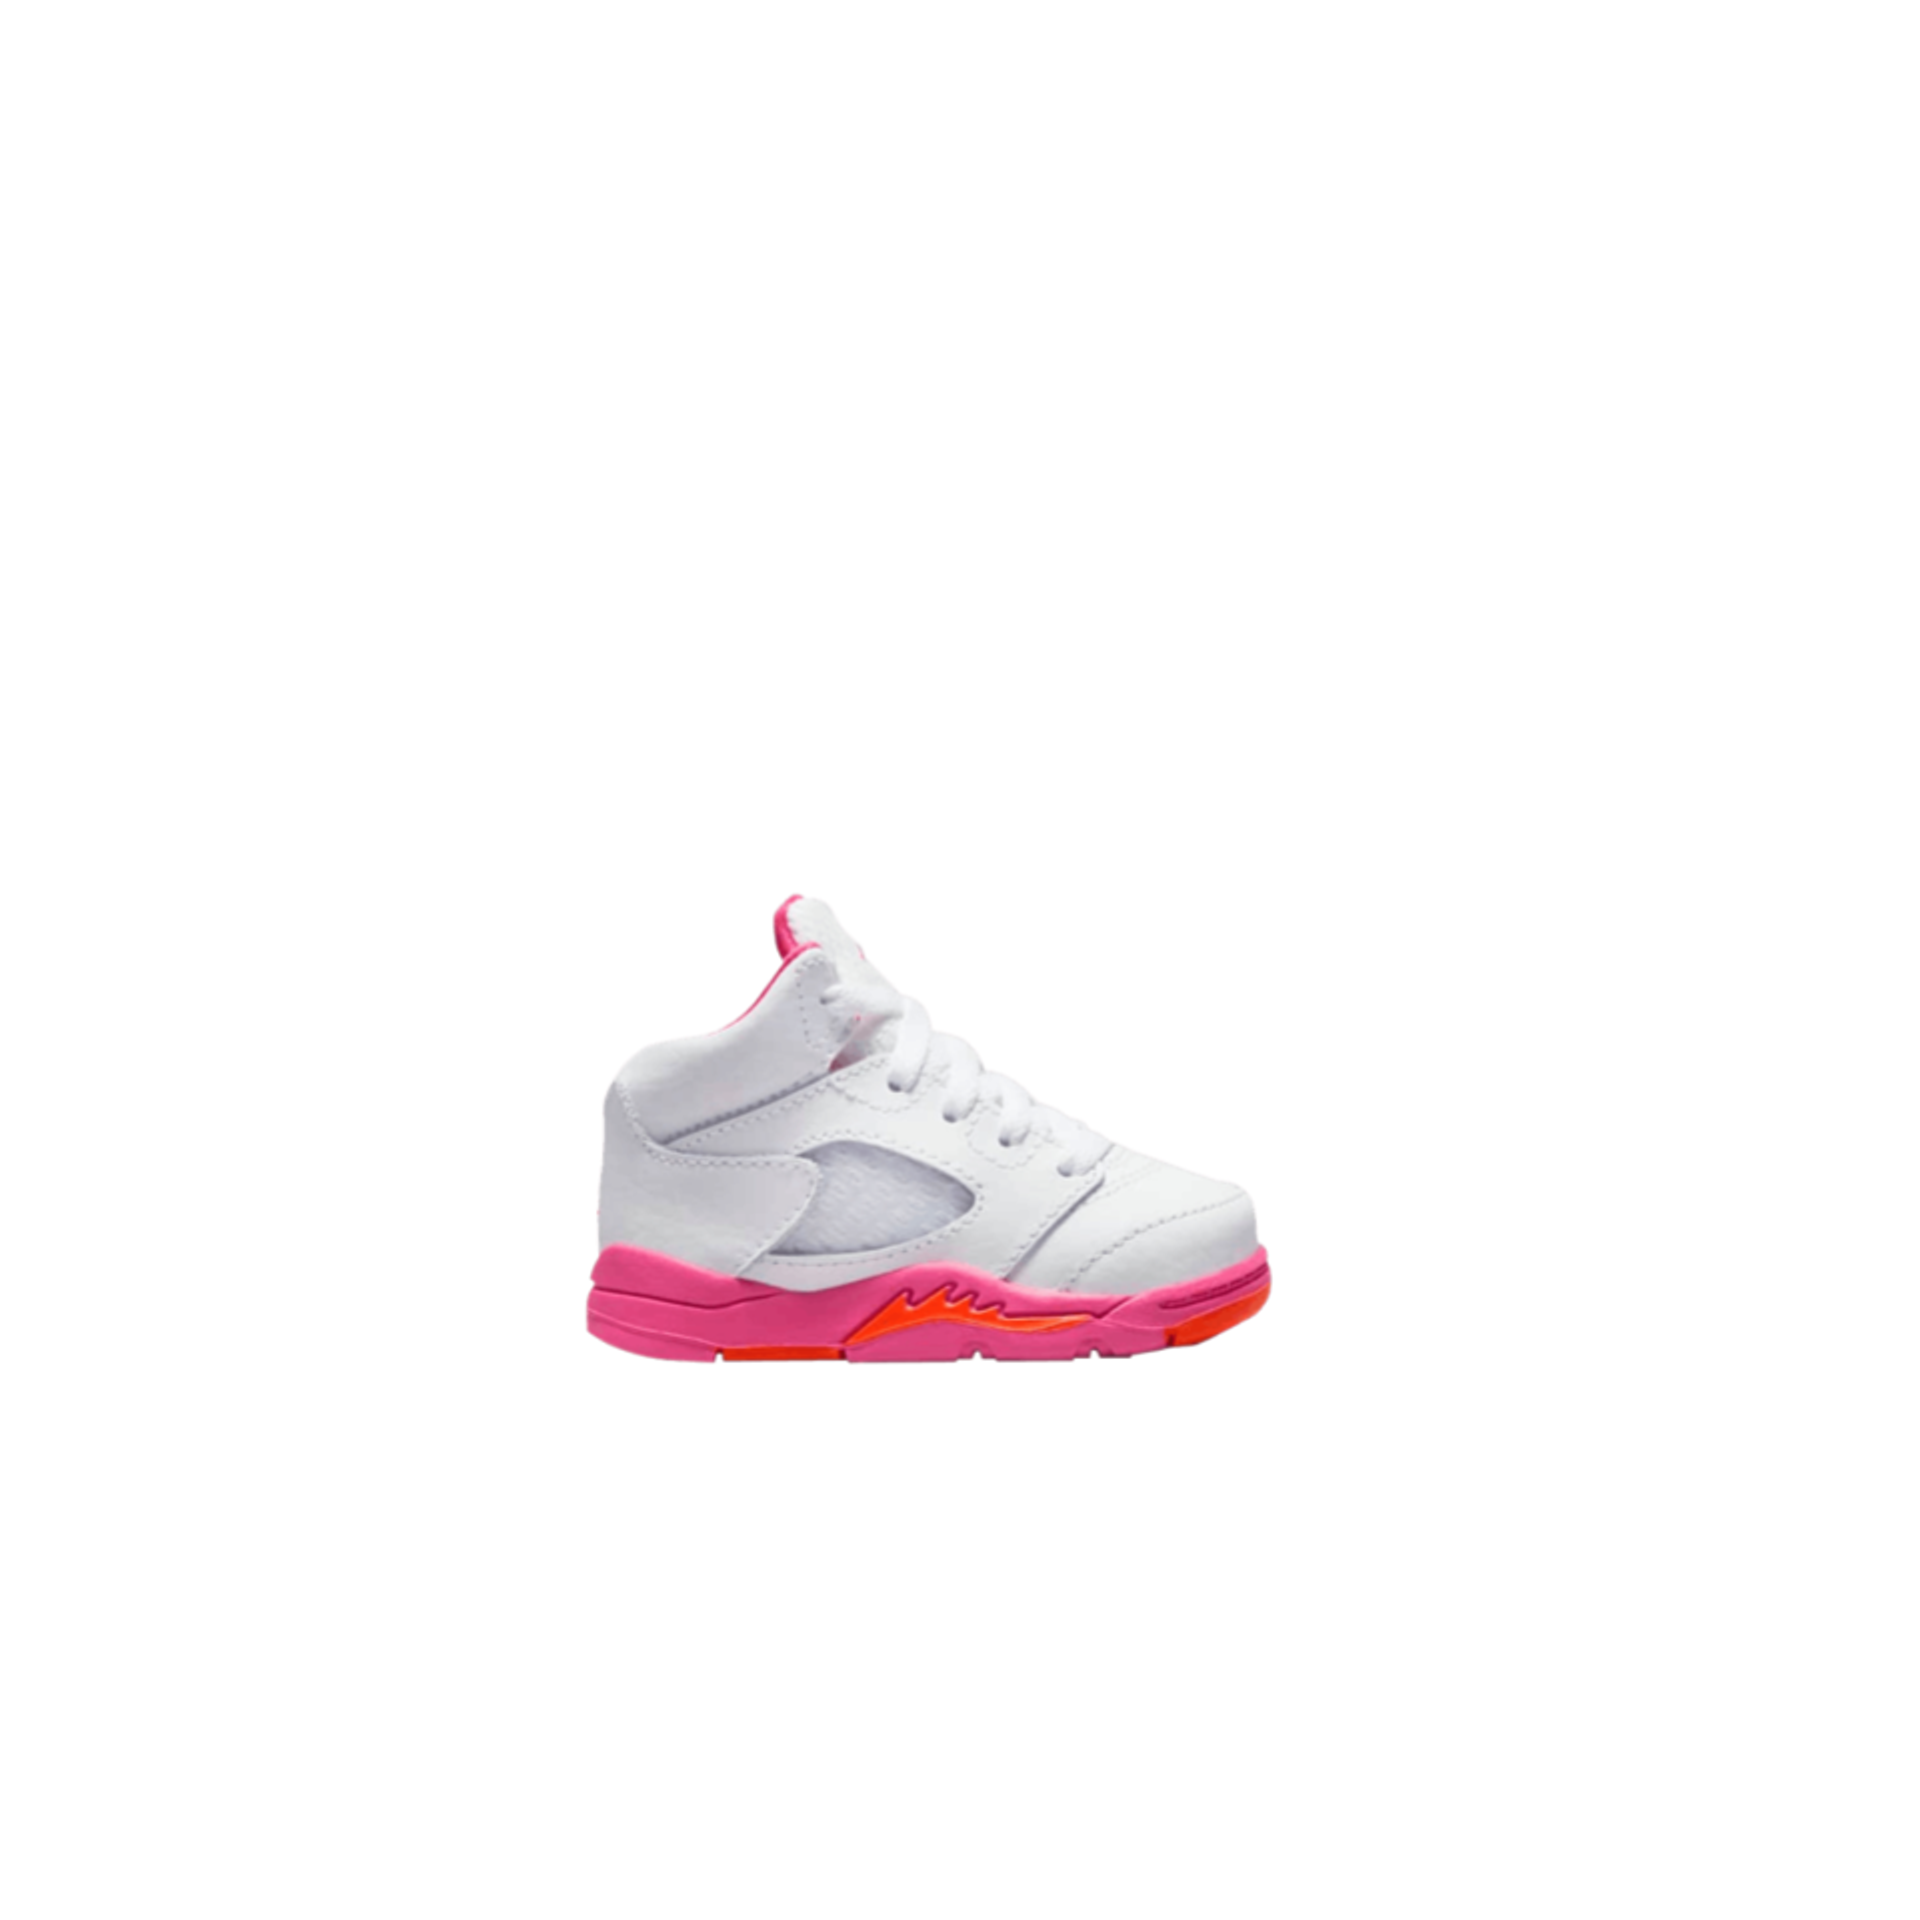 Air Jordan 5 Retro TD 'Pinksicle'